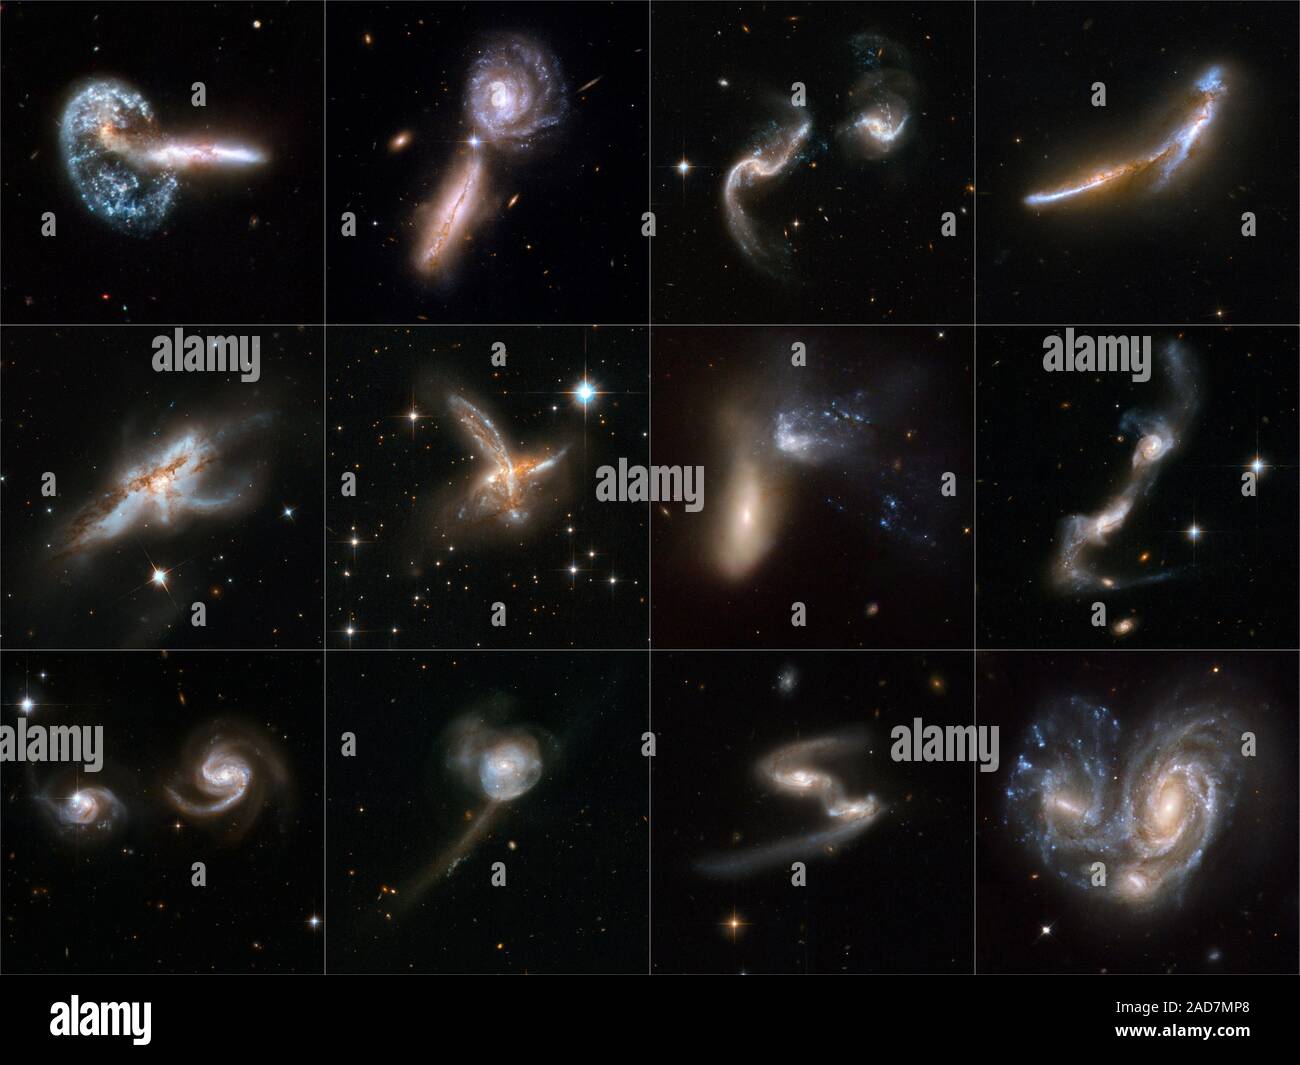 Libri di astronomia tipicamente presenti galassie come compassato, solitaria e maestosa isola mondi di stelle scintillanti. Ma galassie hanno un lato dinamico. Essi hanno incontri ravvicinati che talvolta fine in grand fusioni e traboccante di siti di stella nuova nascita come la collisione di galassie morph in mirabile nuove forme. Oggi, nella celebrazione del telescopio spaziale Hubble del xviii anniversario del lancio, 59 viste di collisione di galassie costituiscono la più grande collezione di immagini di Hubble mai rilasciato al pubblico. Questo nuovo telescopio Hubble atlas drammaticamente illustra come collisioni di galassie producono una notevole var Foto Stock